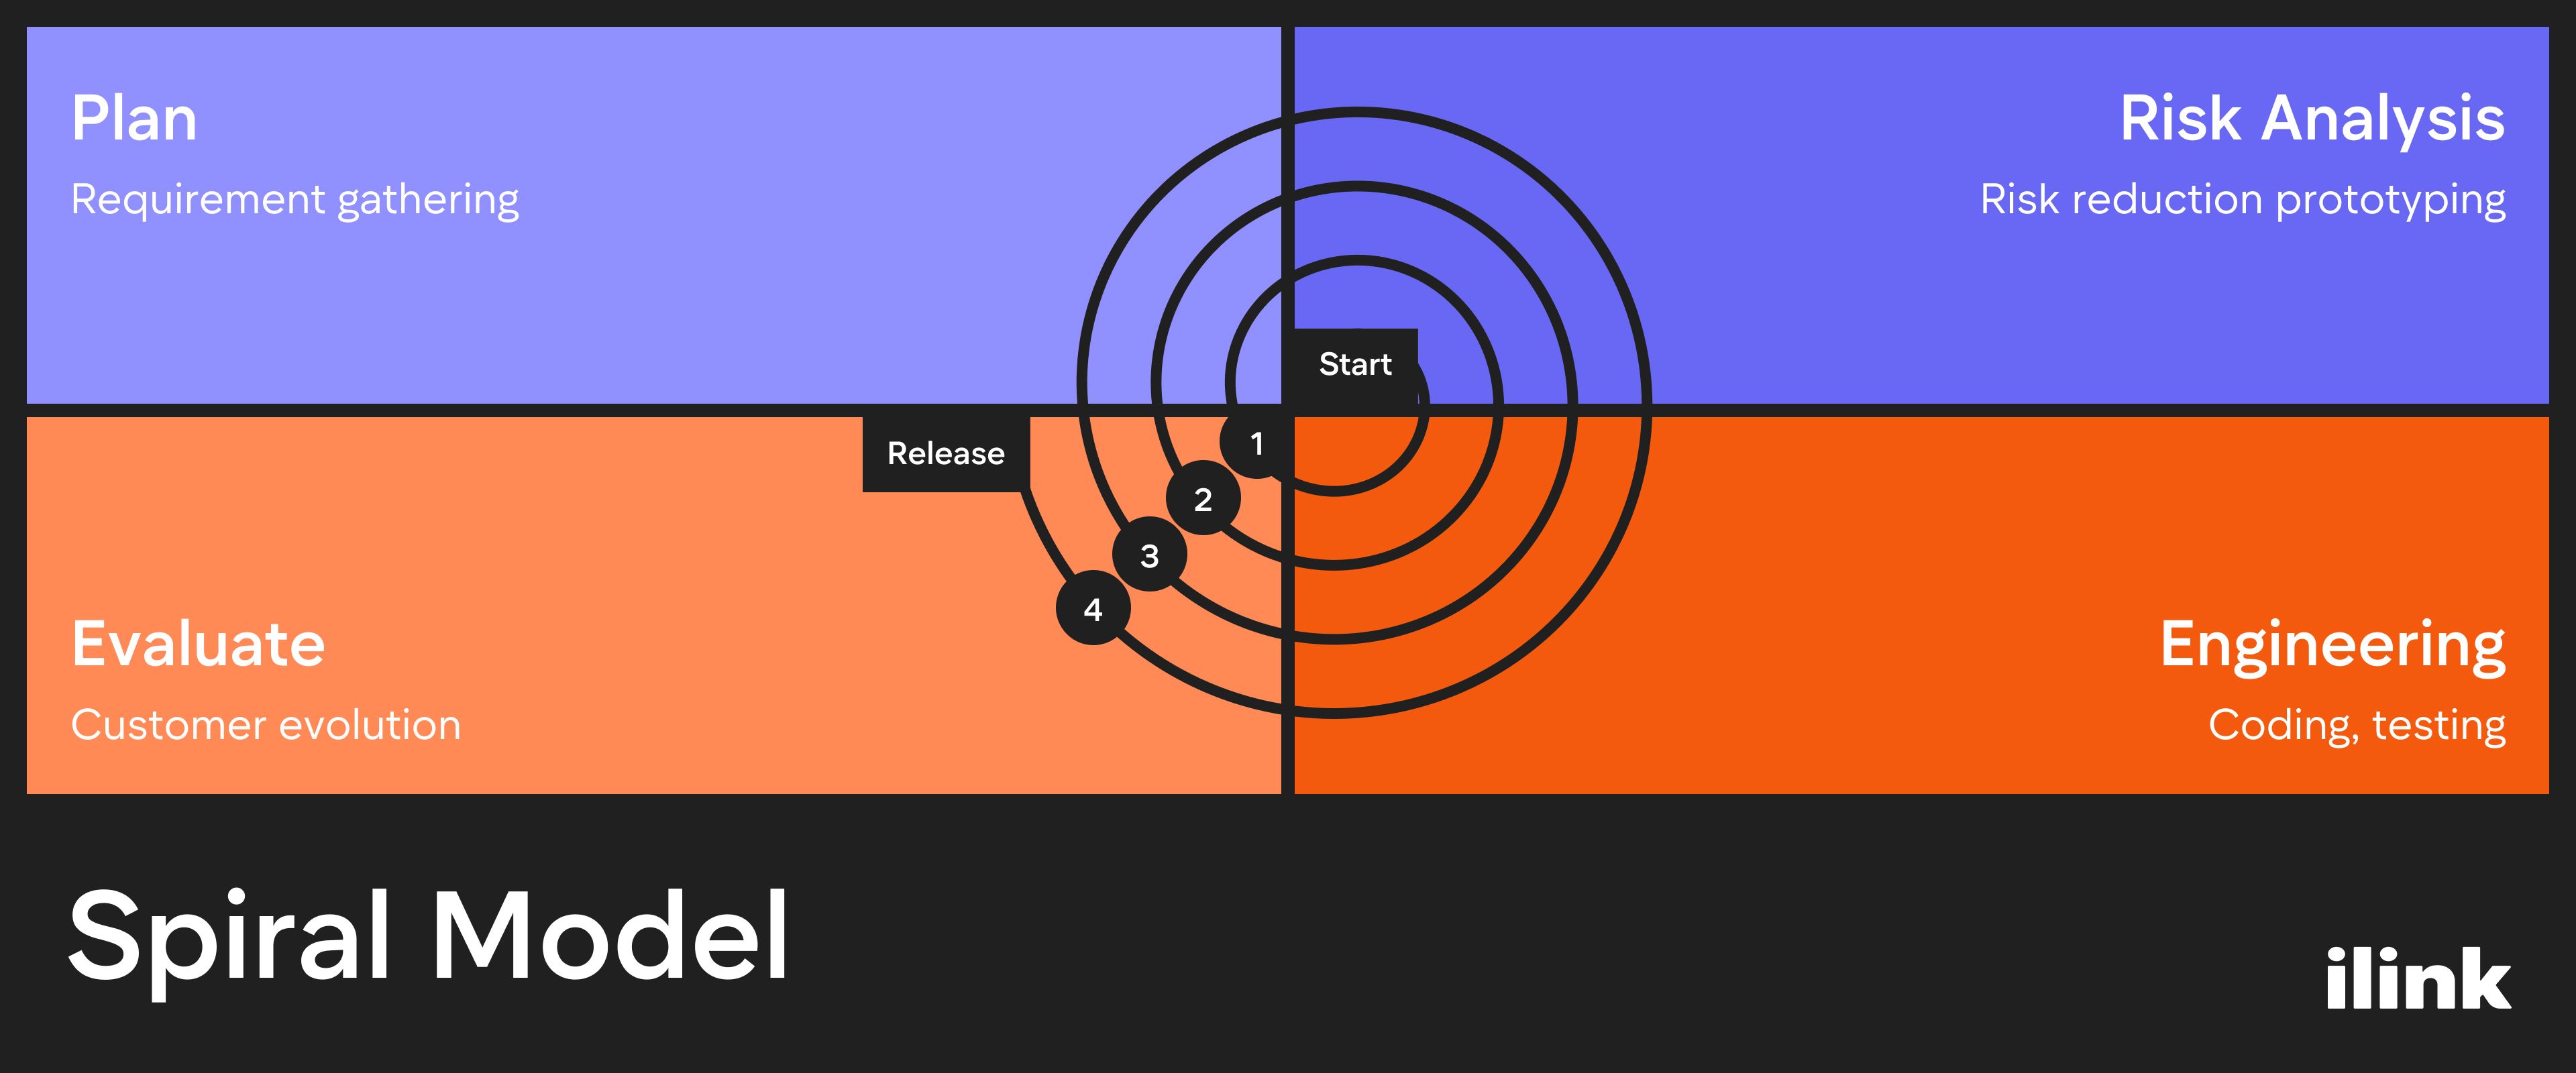 Spiral Model | ilink blog